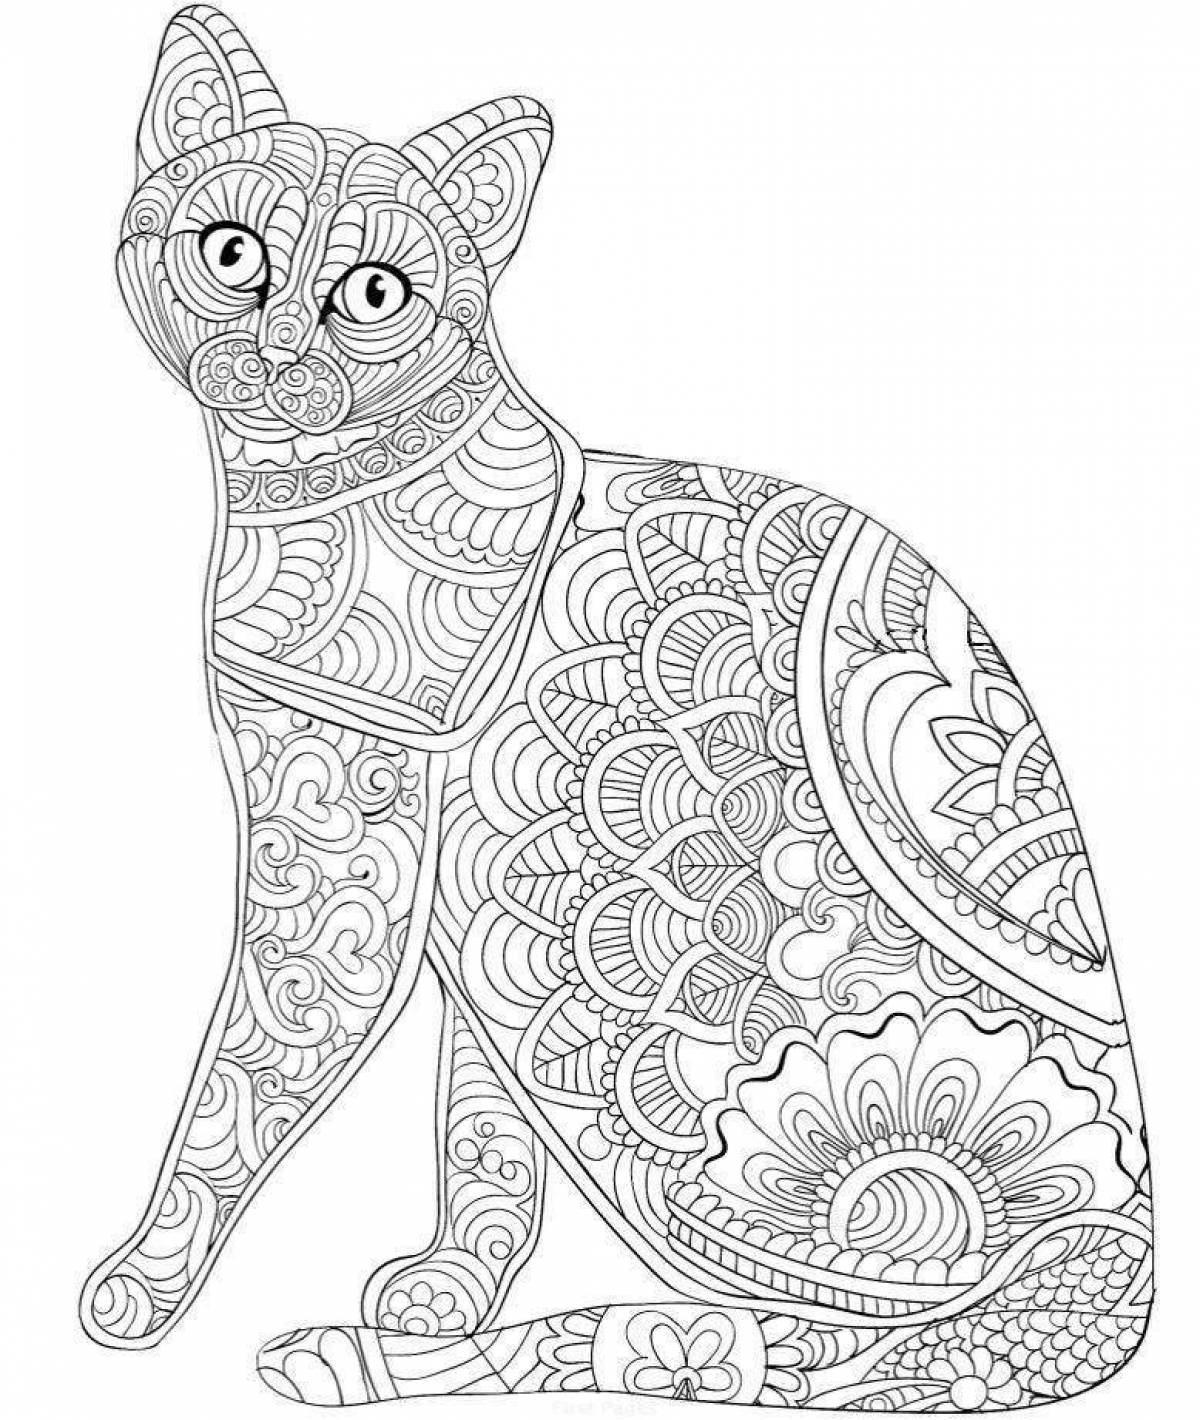 Serene cat antistress coloring book